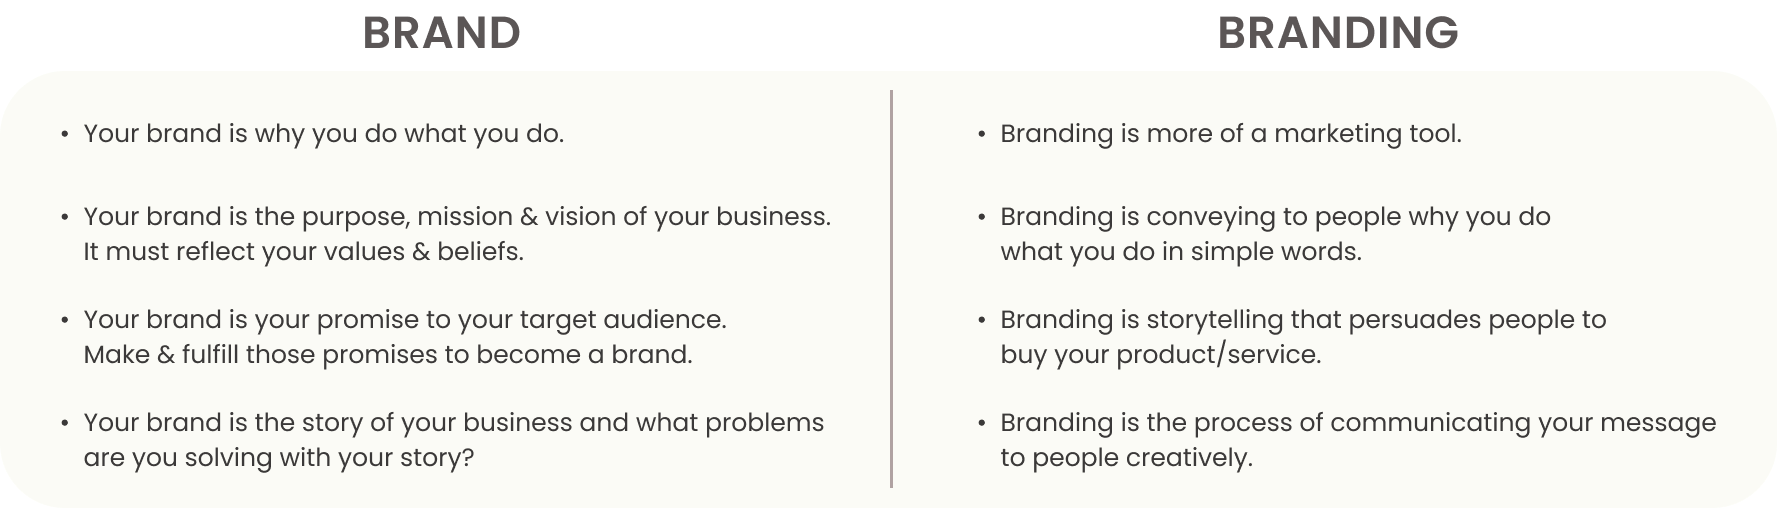 brand vs branding